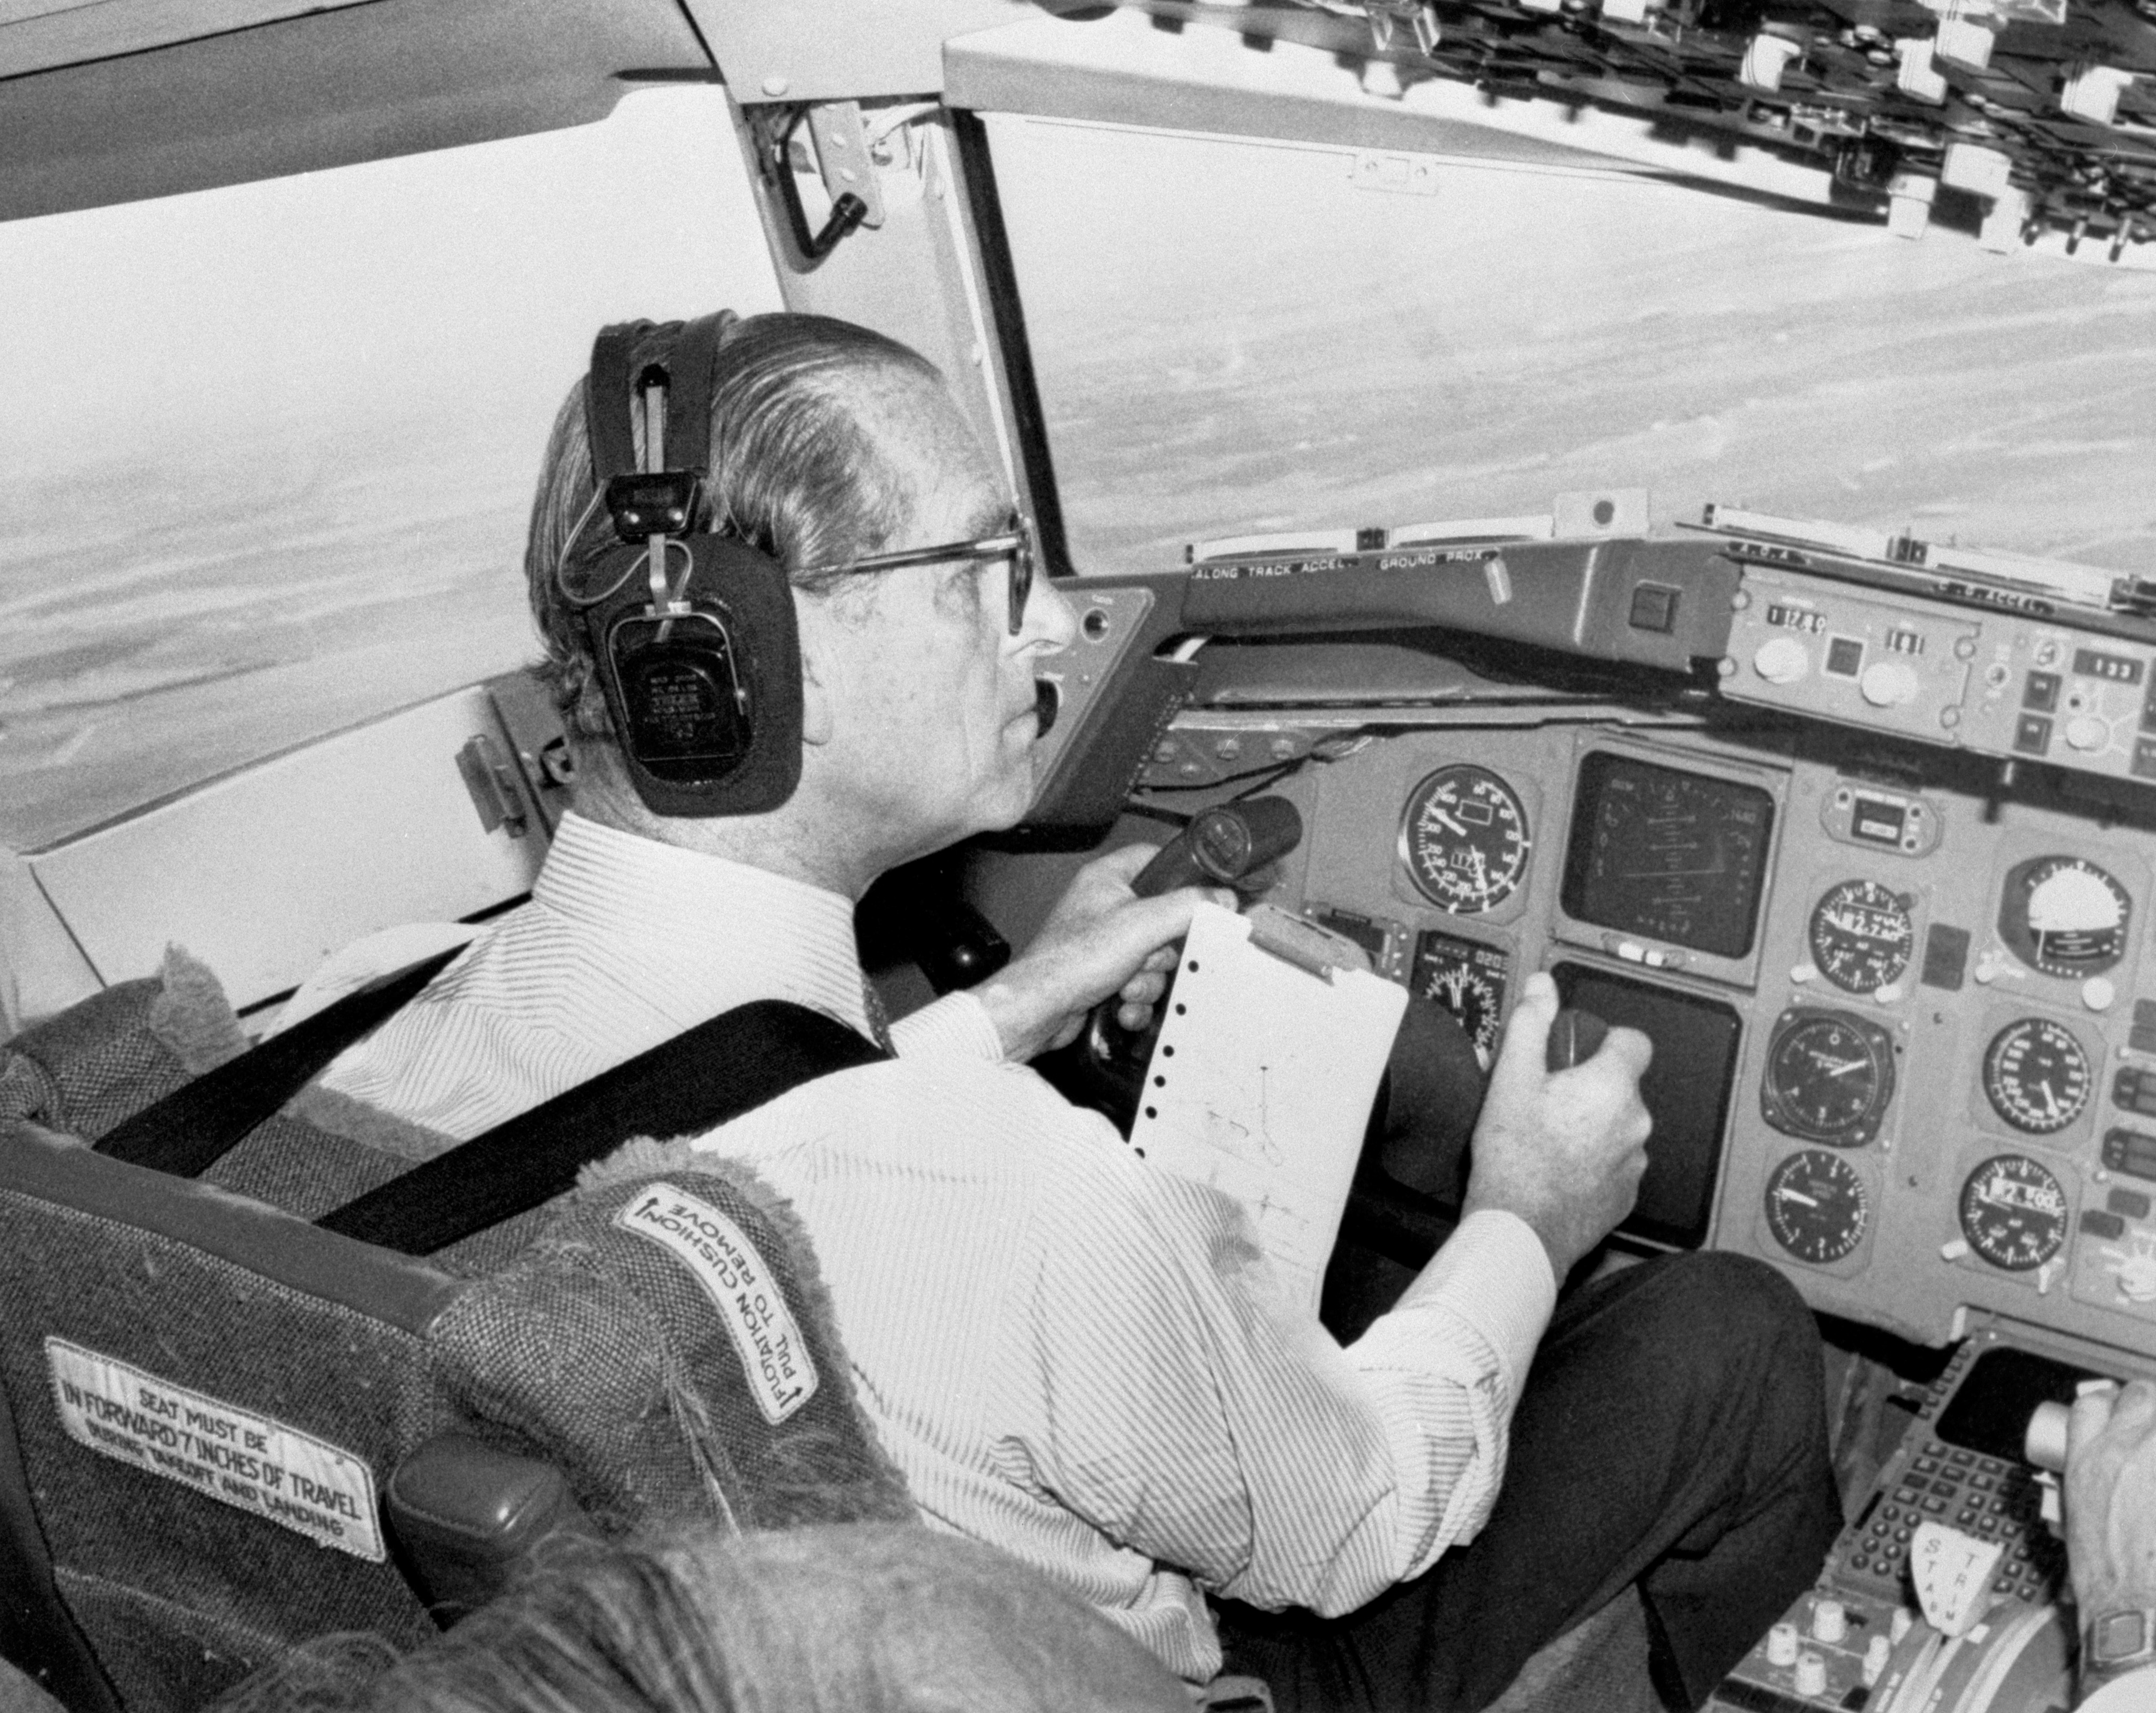 The Duke of Edinburgh in an aeroplane